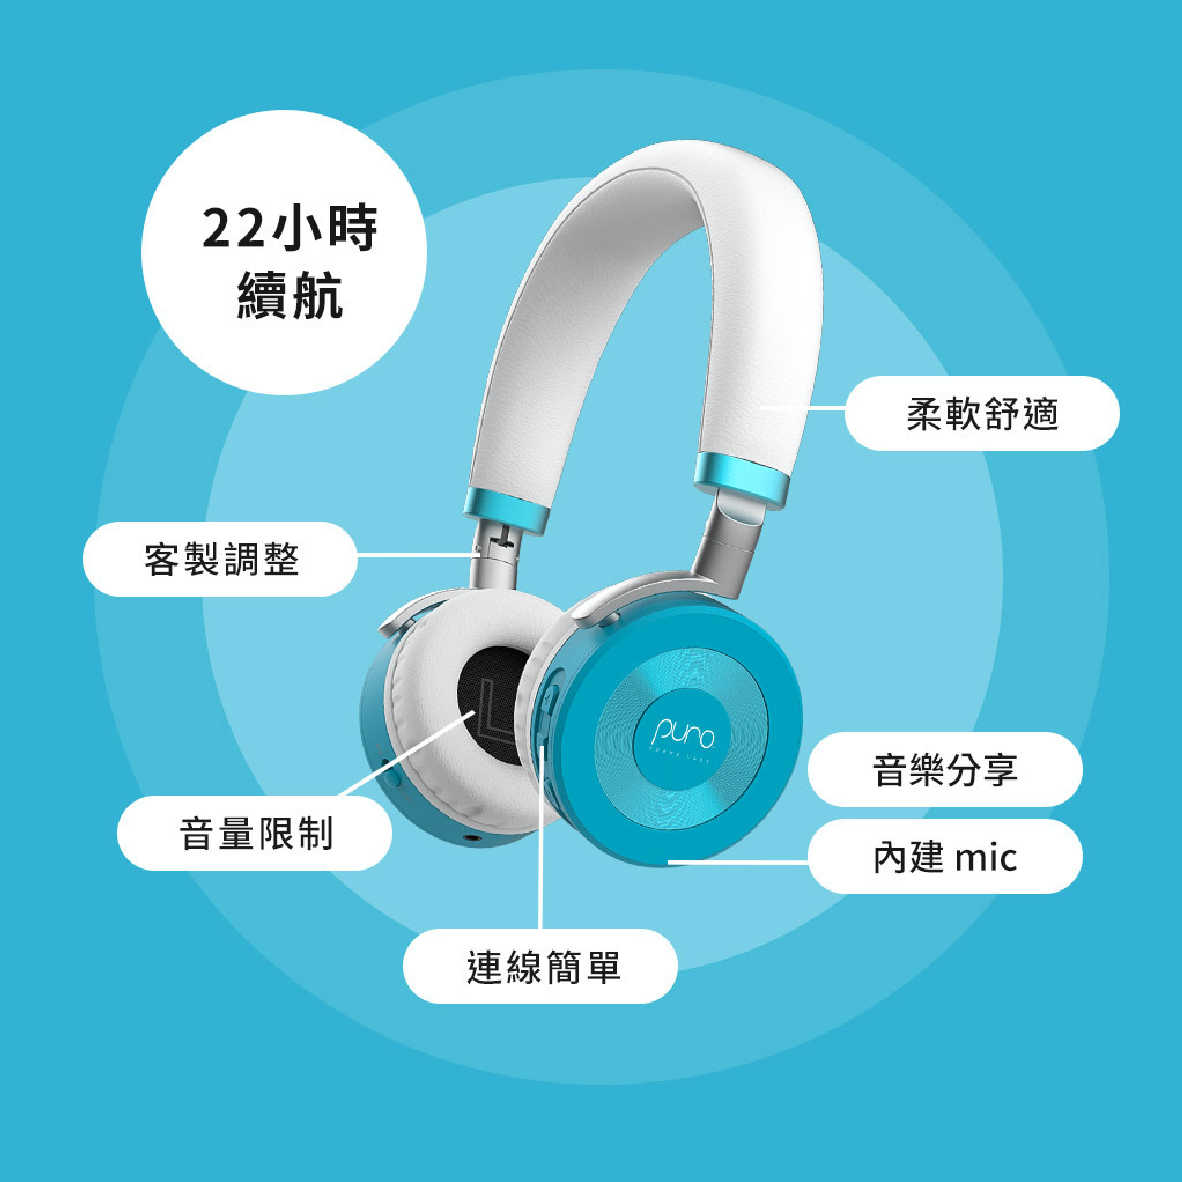 Puro JuniorJams 薄荷藍 內建麥克風 22hr續航 音量控制 兒童耳機 耳罩式耳機 | 金曲音響